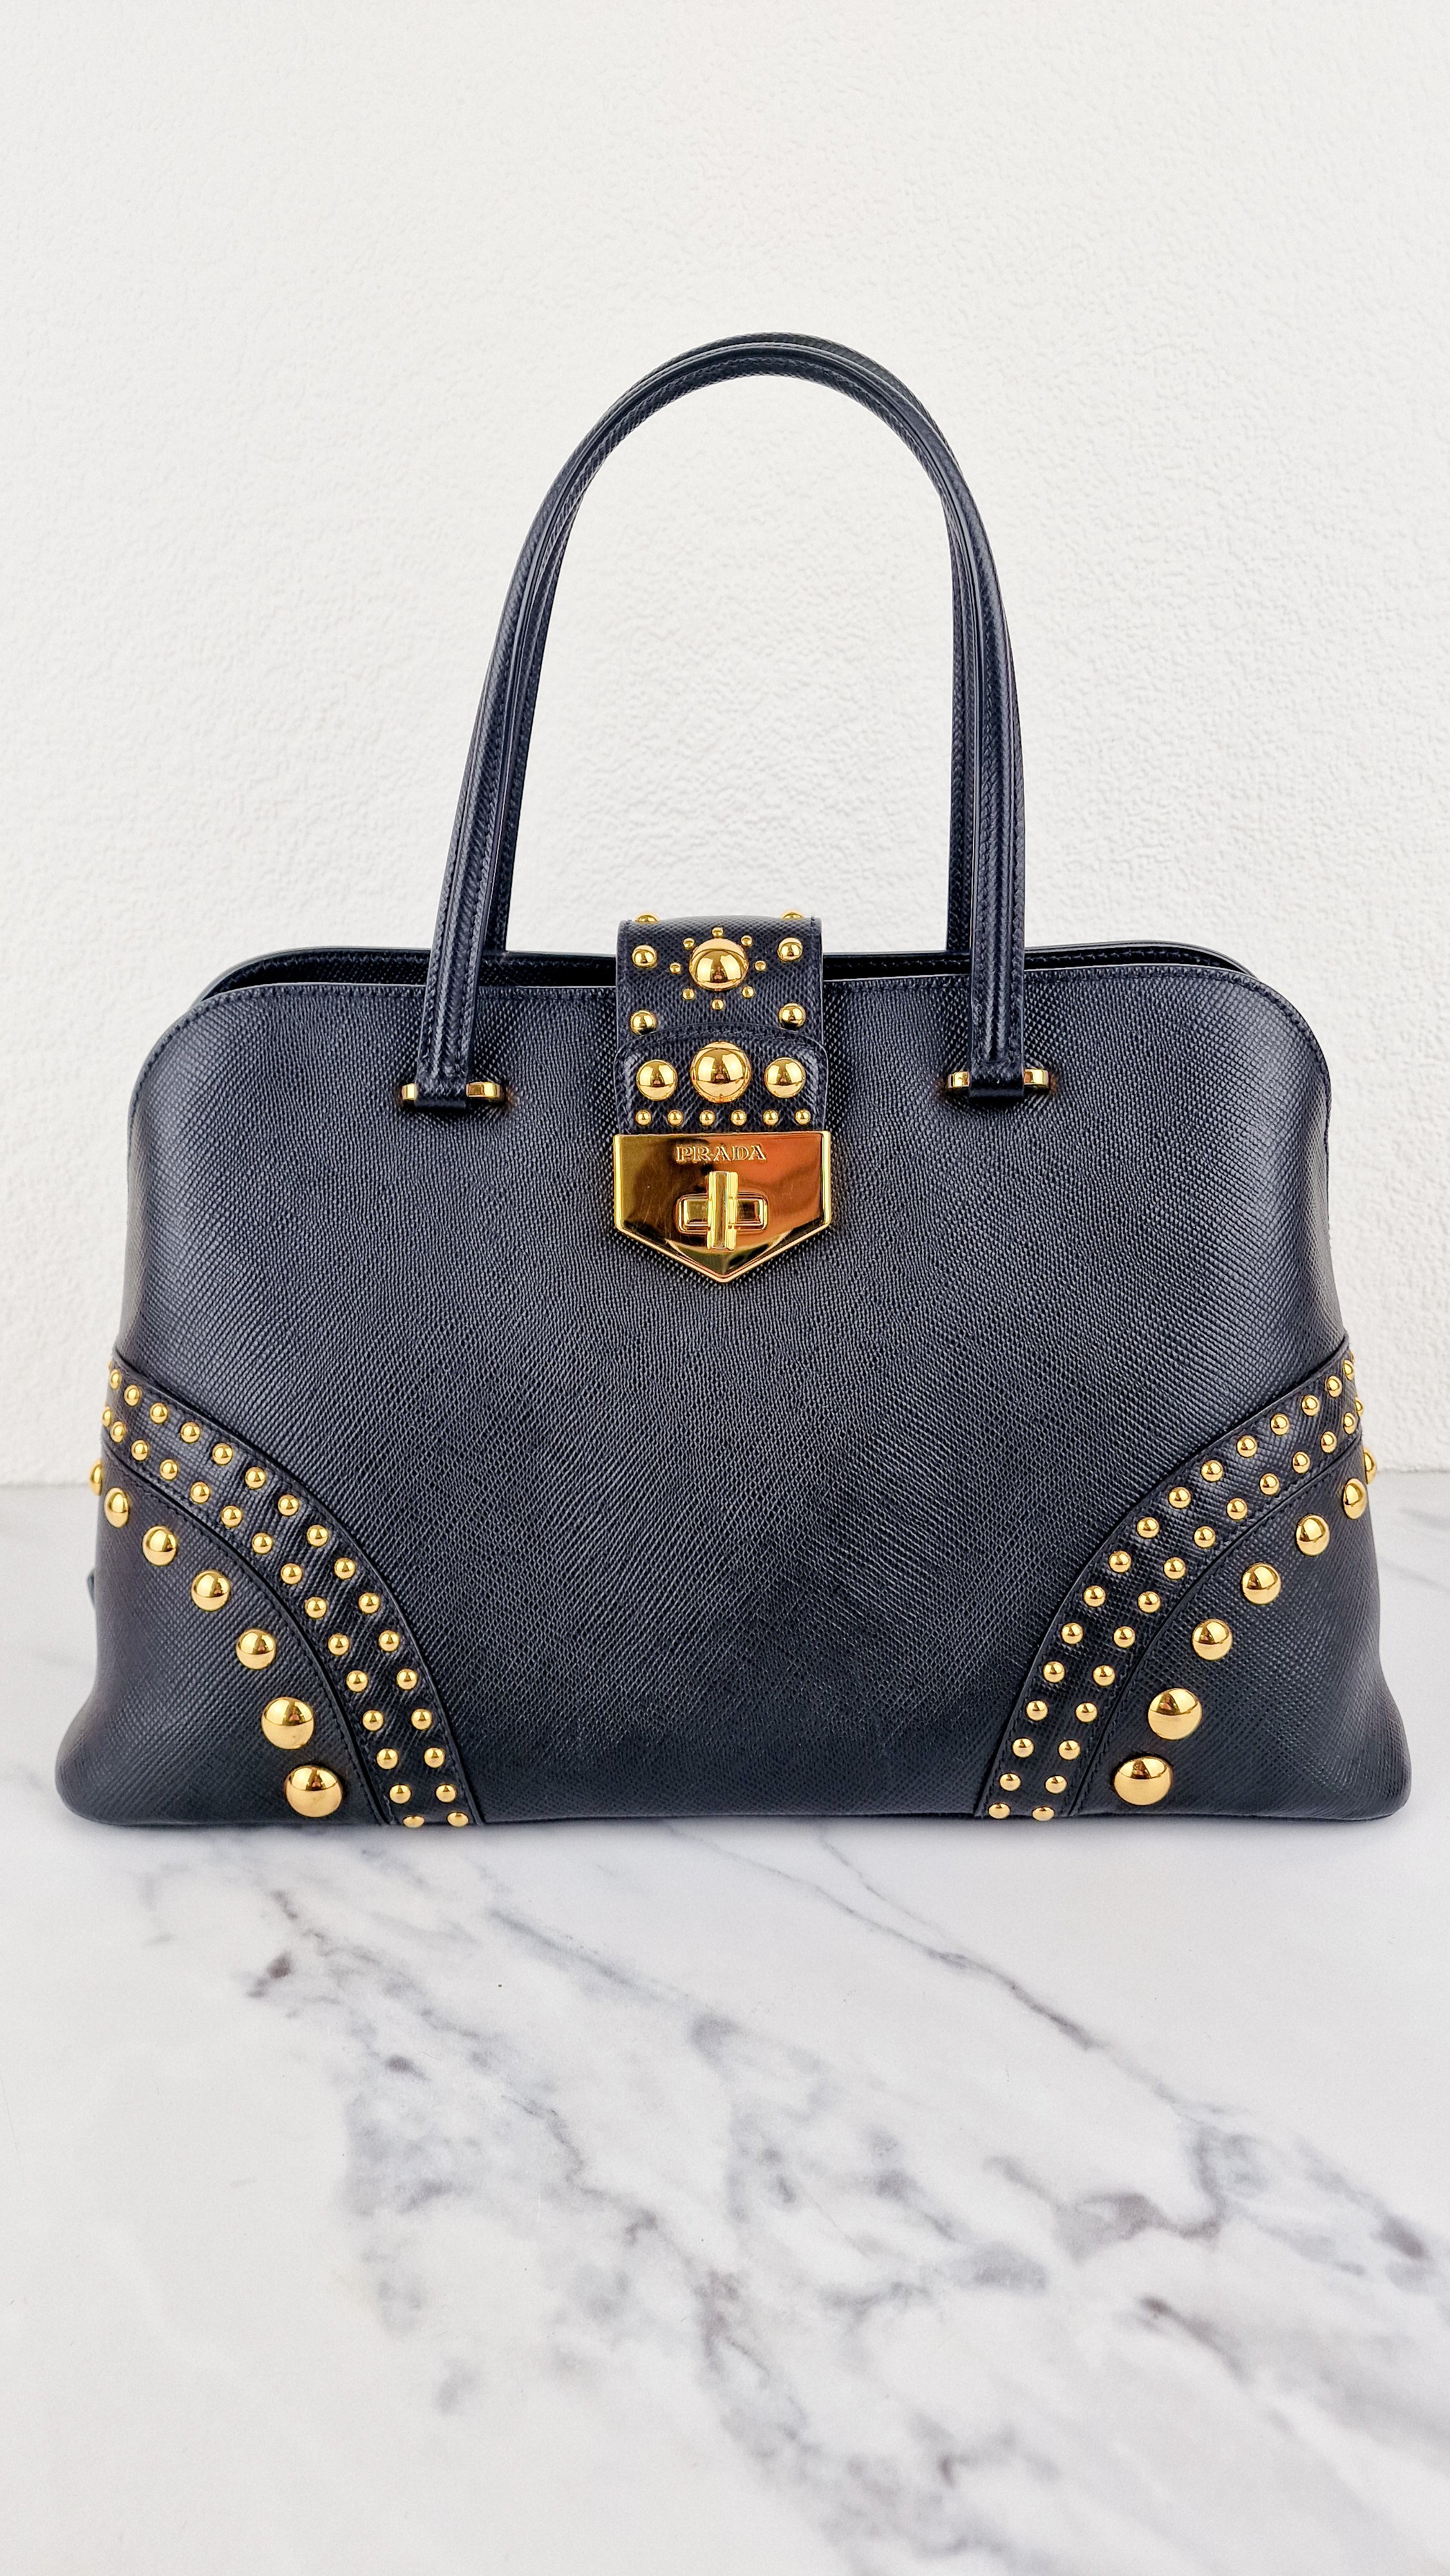 A Closer Look: Prada Saffiano Top Handle Bag